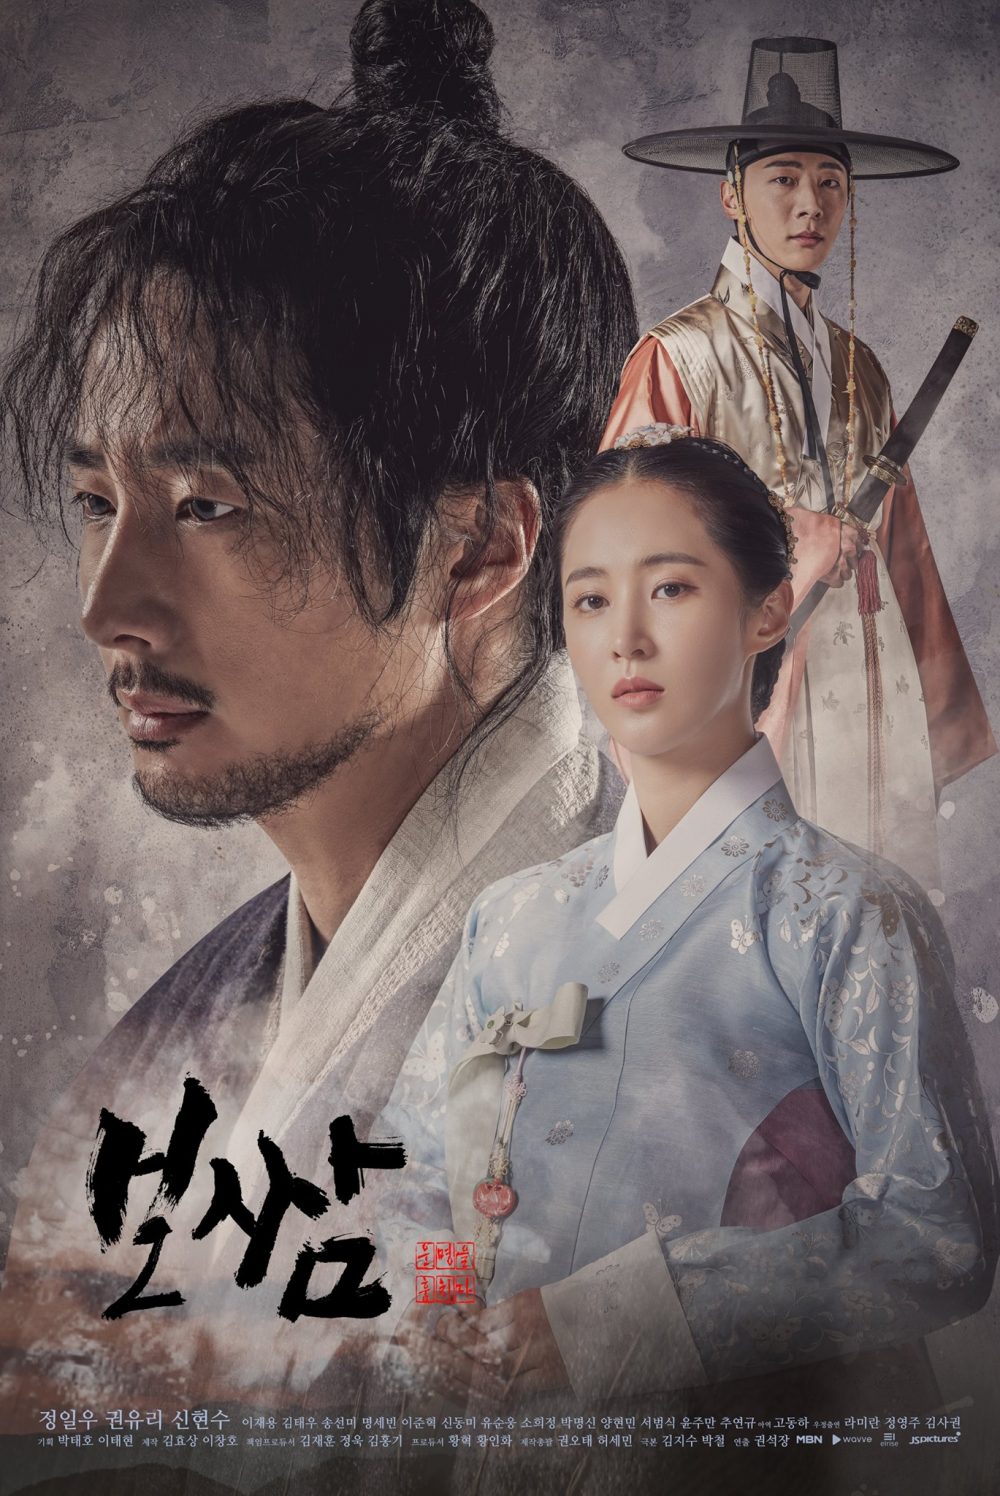 harper bazaar nhung bo phim cua jung il woo dong 12 e1657080620670 - 12 bộ phim hay nhất của “hoàng tử cổ trang” Jung Il Woo